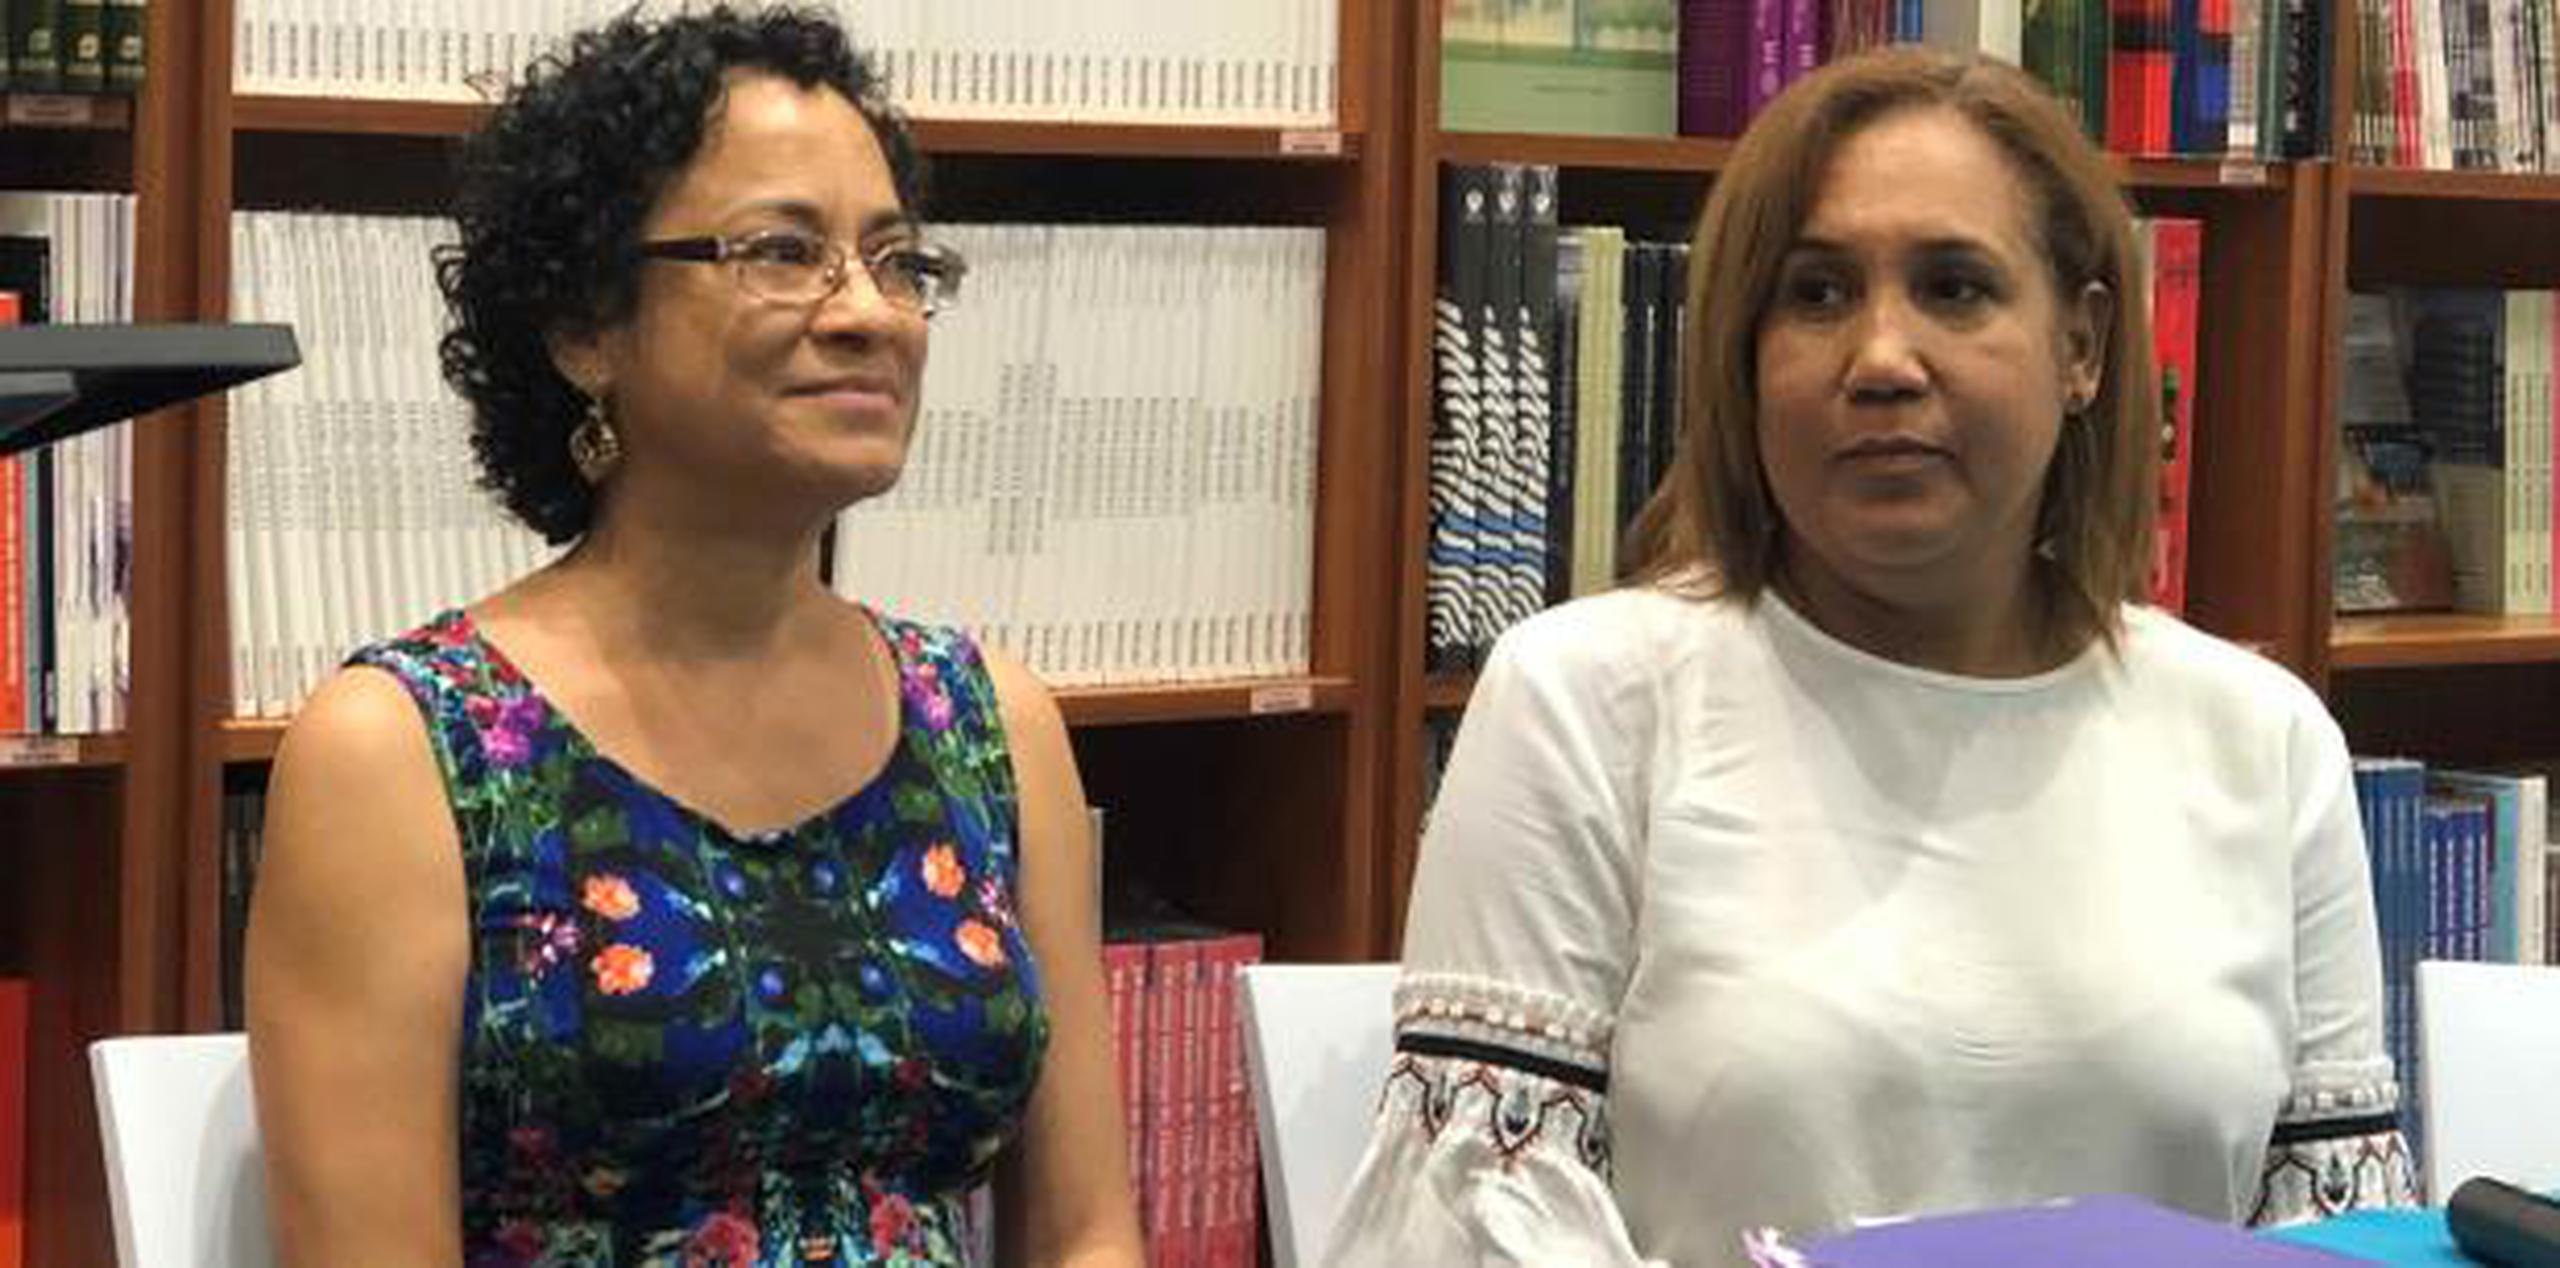 La profesora Marta Jiménez, a la derecha, destacó el suspenso y el humor de los 13 cuentos de Maite Ramos Ortiz recogidos en el libro.  (Suministrada)